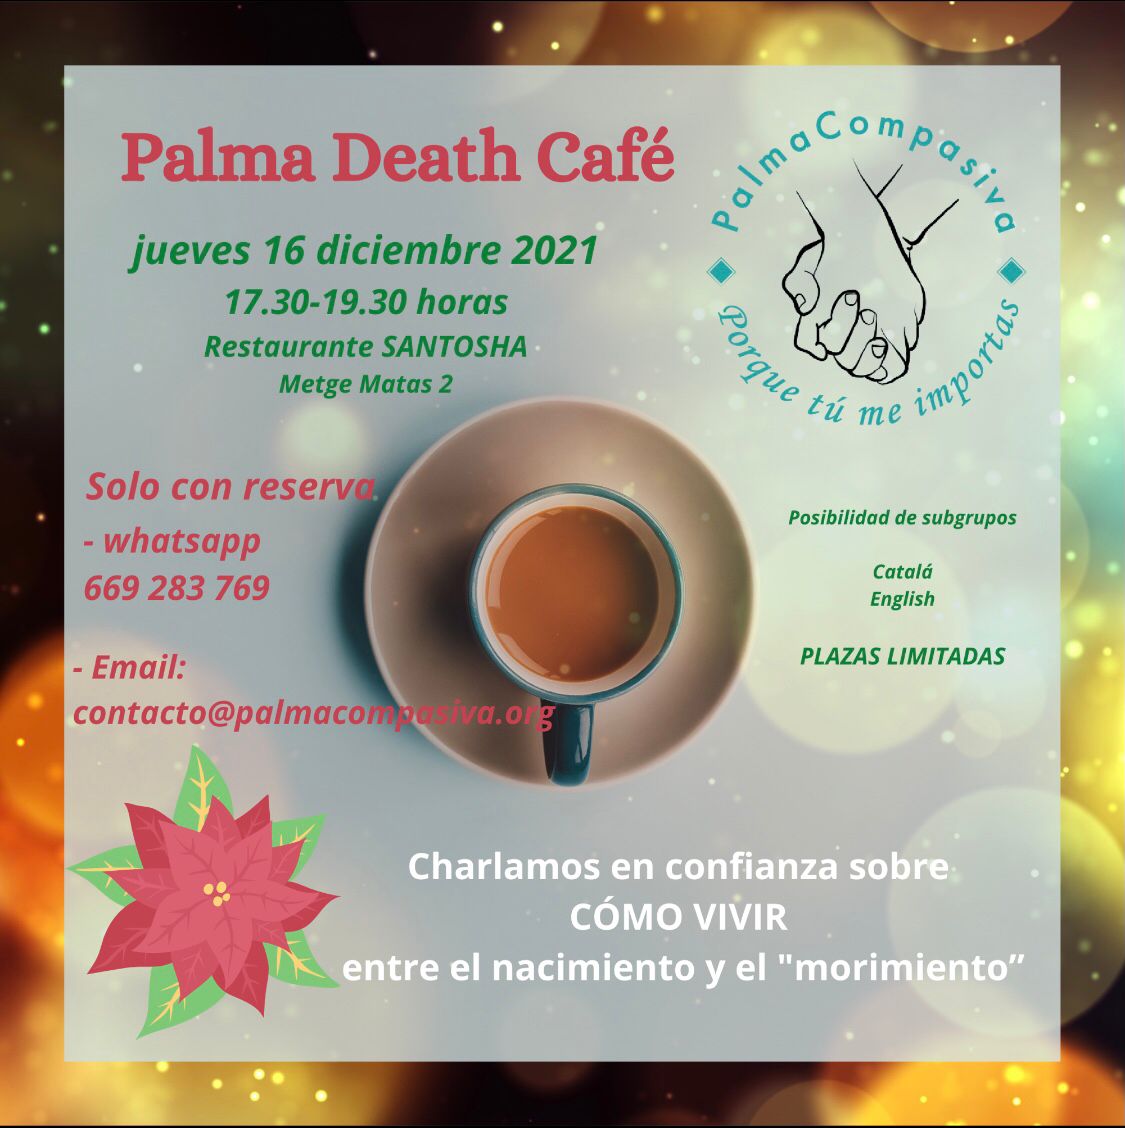 Palma death cafe